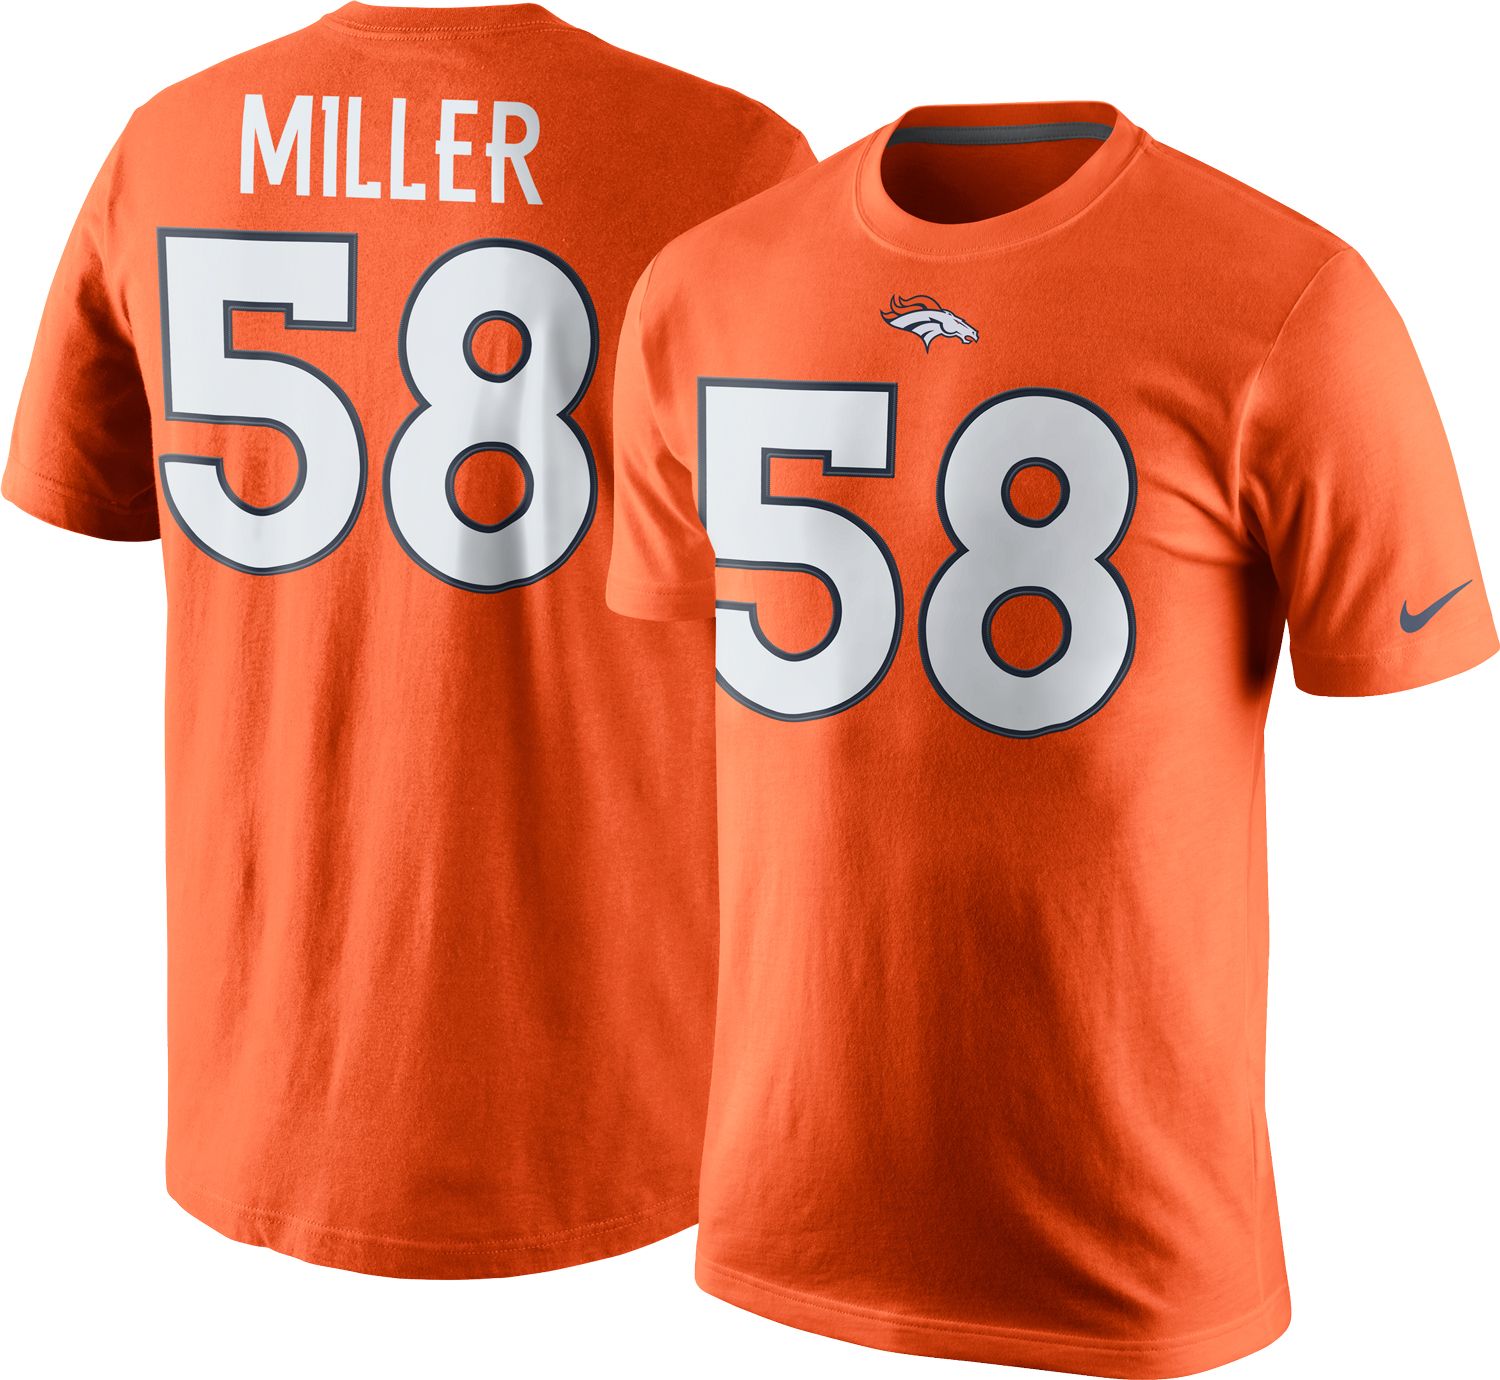 von miller t shirt jersey | www 